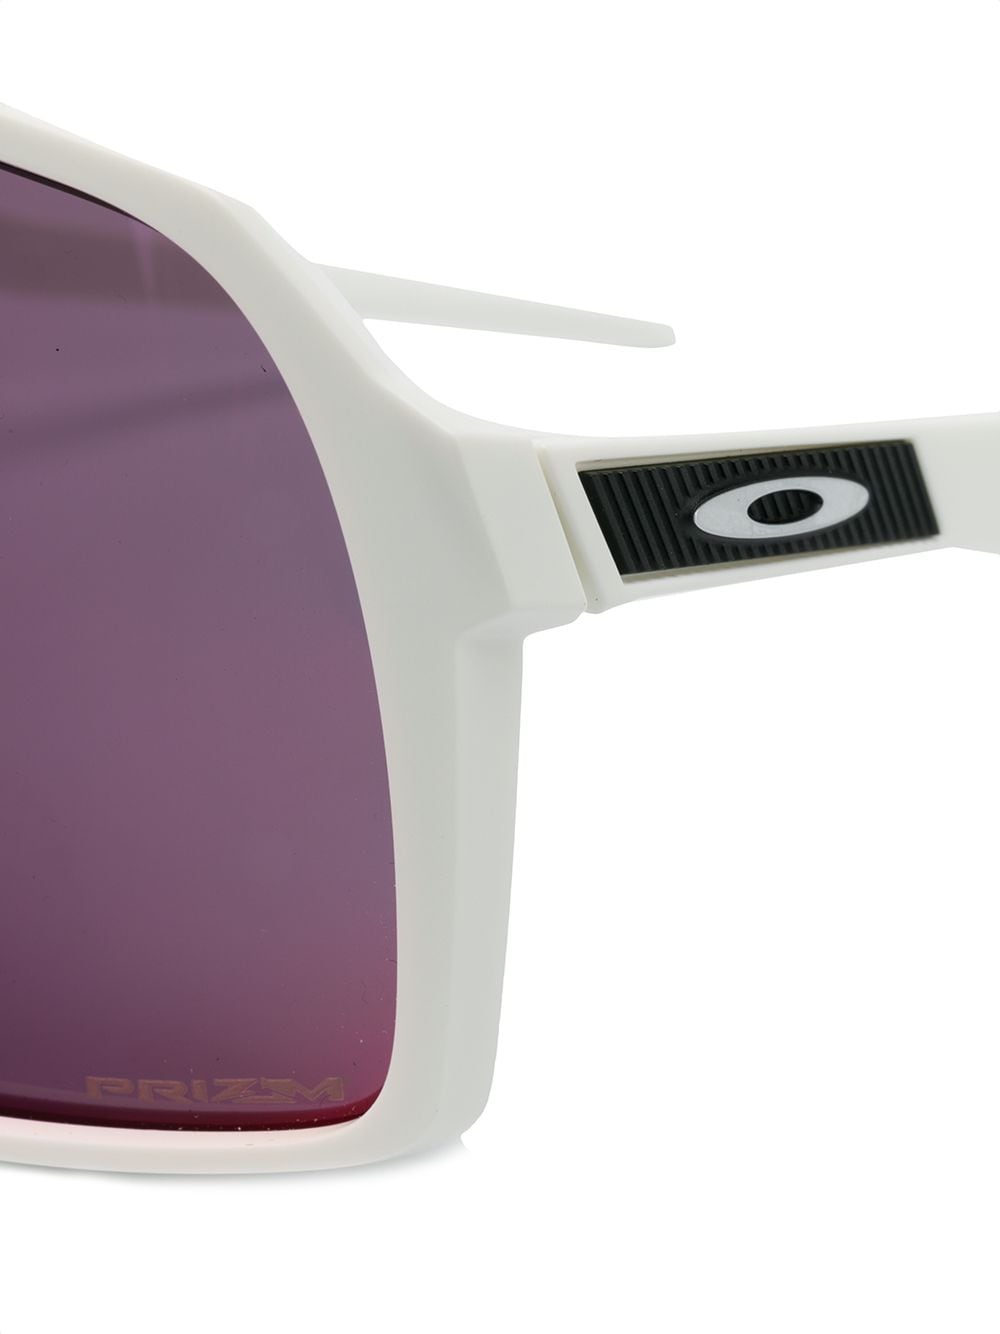 Black Sutro sunglasses from Oakley